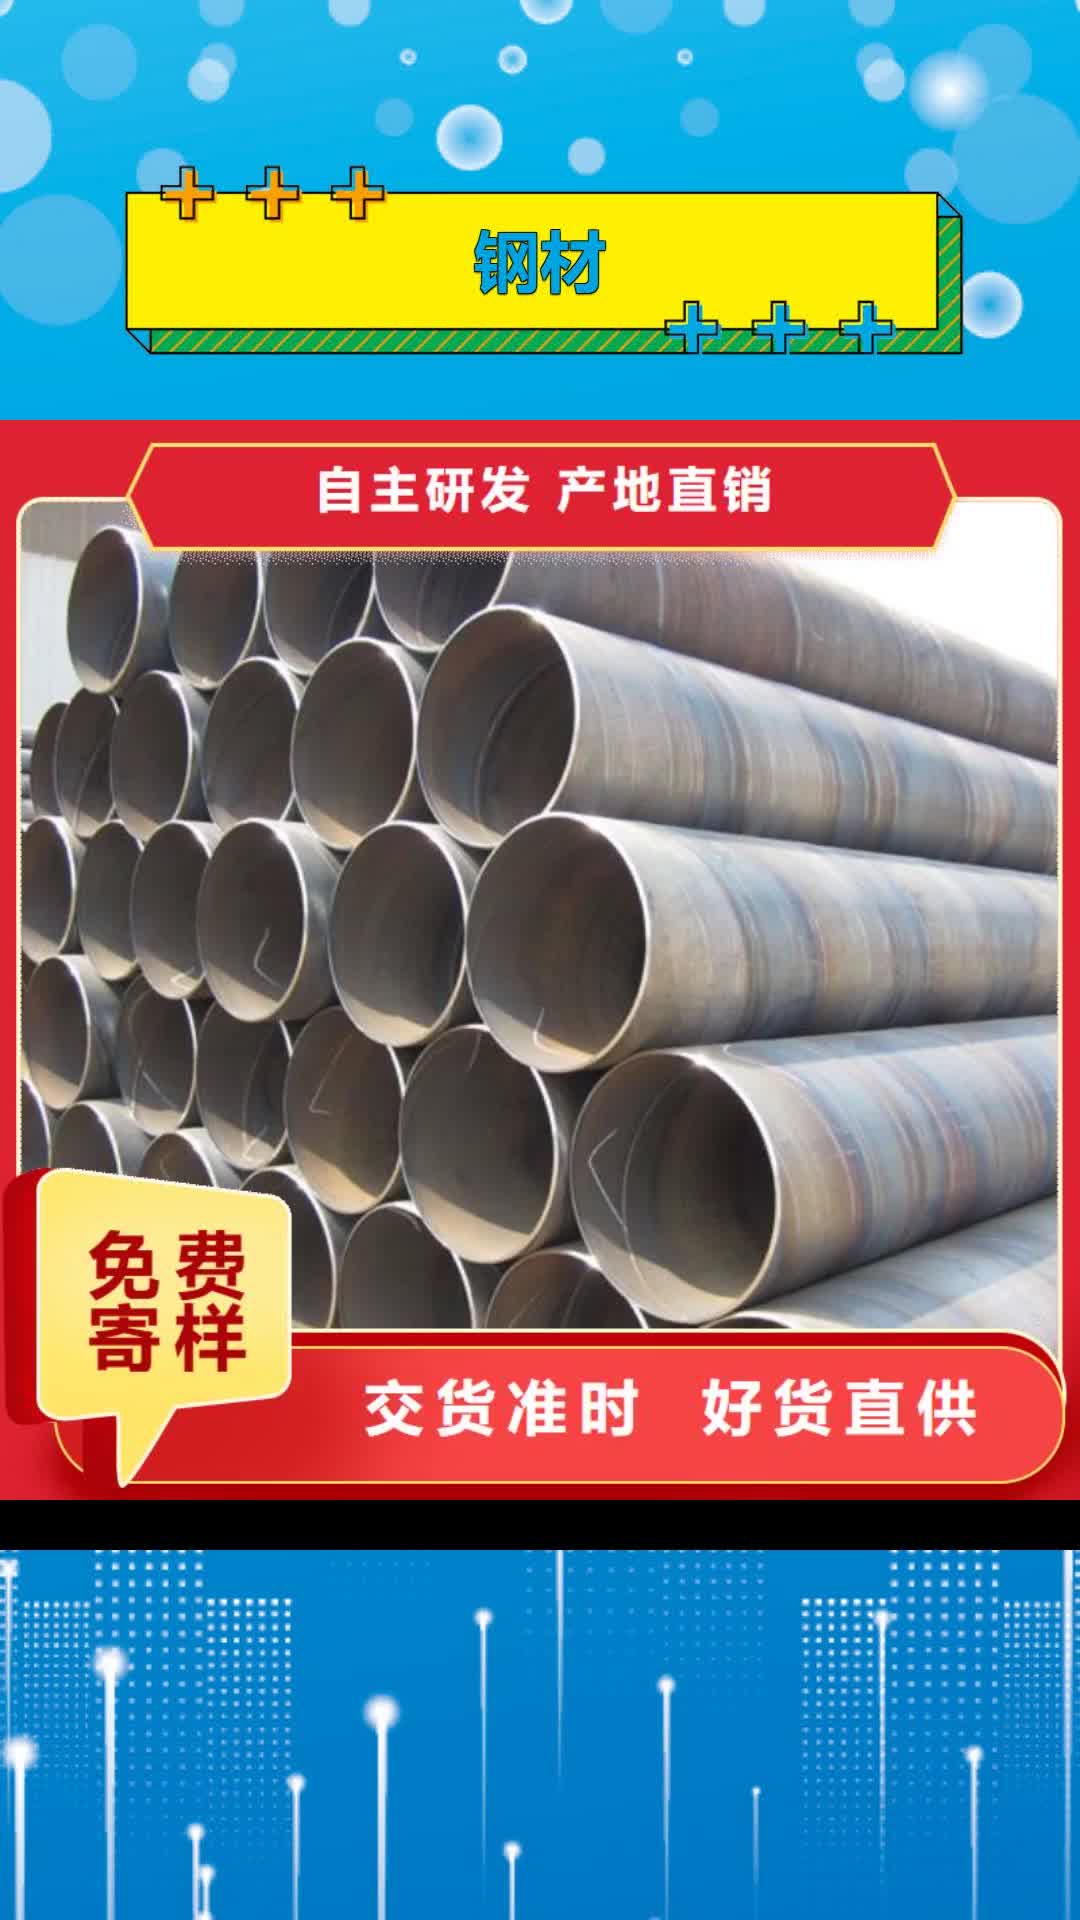 西双版纳【钢材】H型钢专业供货品质管控